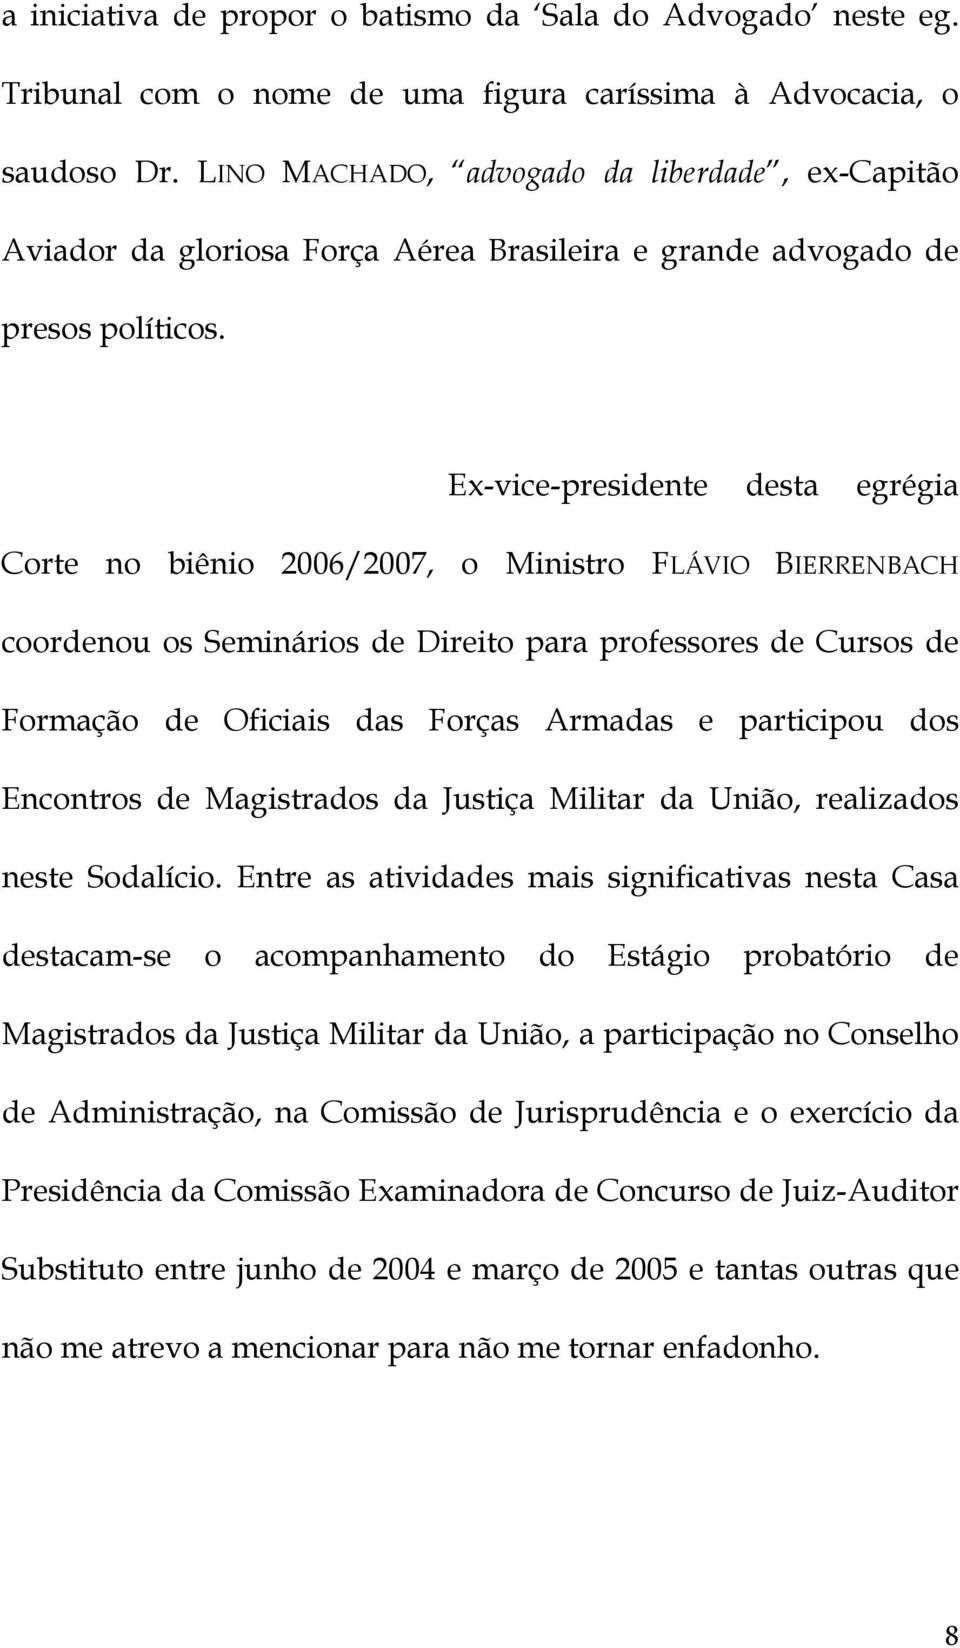 Ex-vice-presidente desta egrégia Corte no biênio 2006/2007, o Ministro FLÁVIO BIERRENBACH coordenou os Seminários de Direito para professores de Cursos de Formação de Oficiais das Forças Armadas e